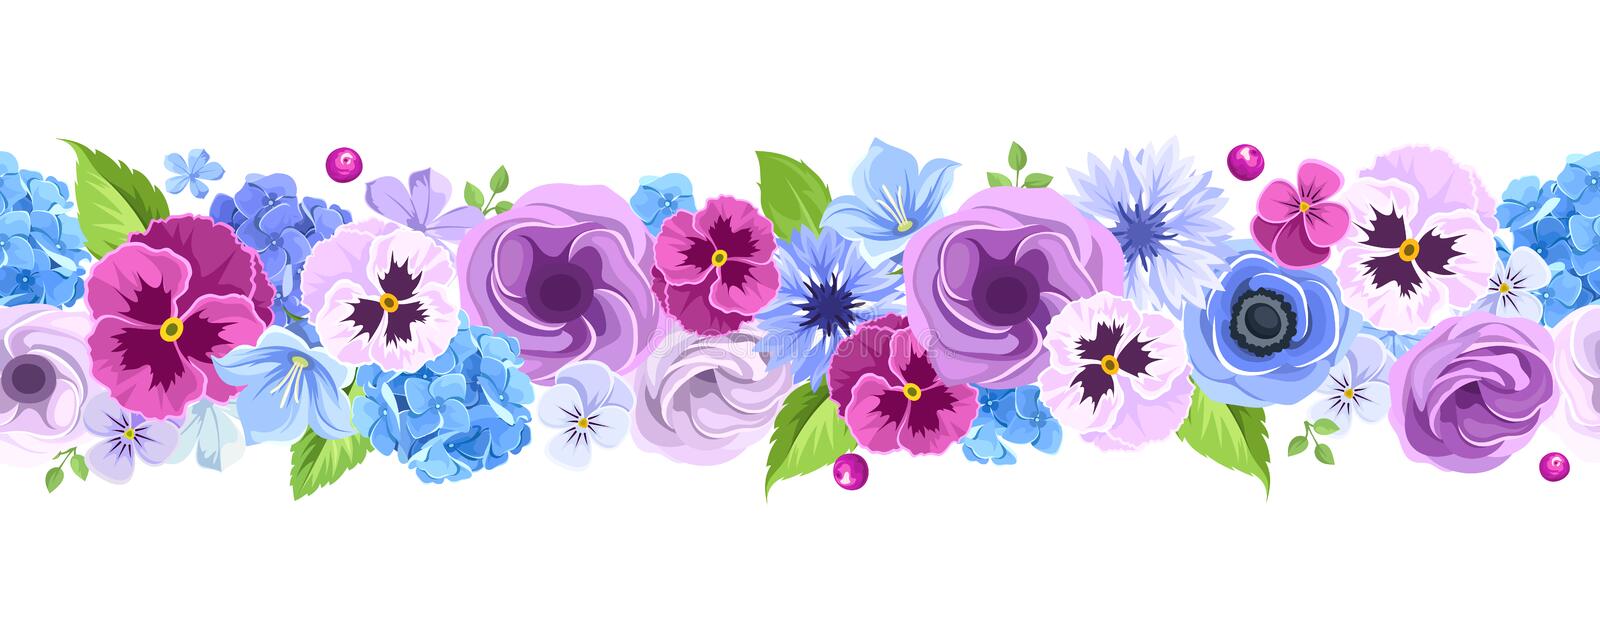 fondo-inconsútil-horizontal-con-las-flores-azules-y-púrpuras-ilustración-del-vector-75393163